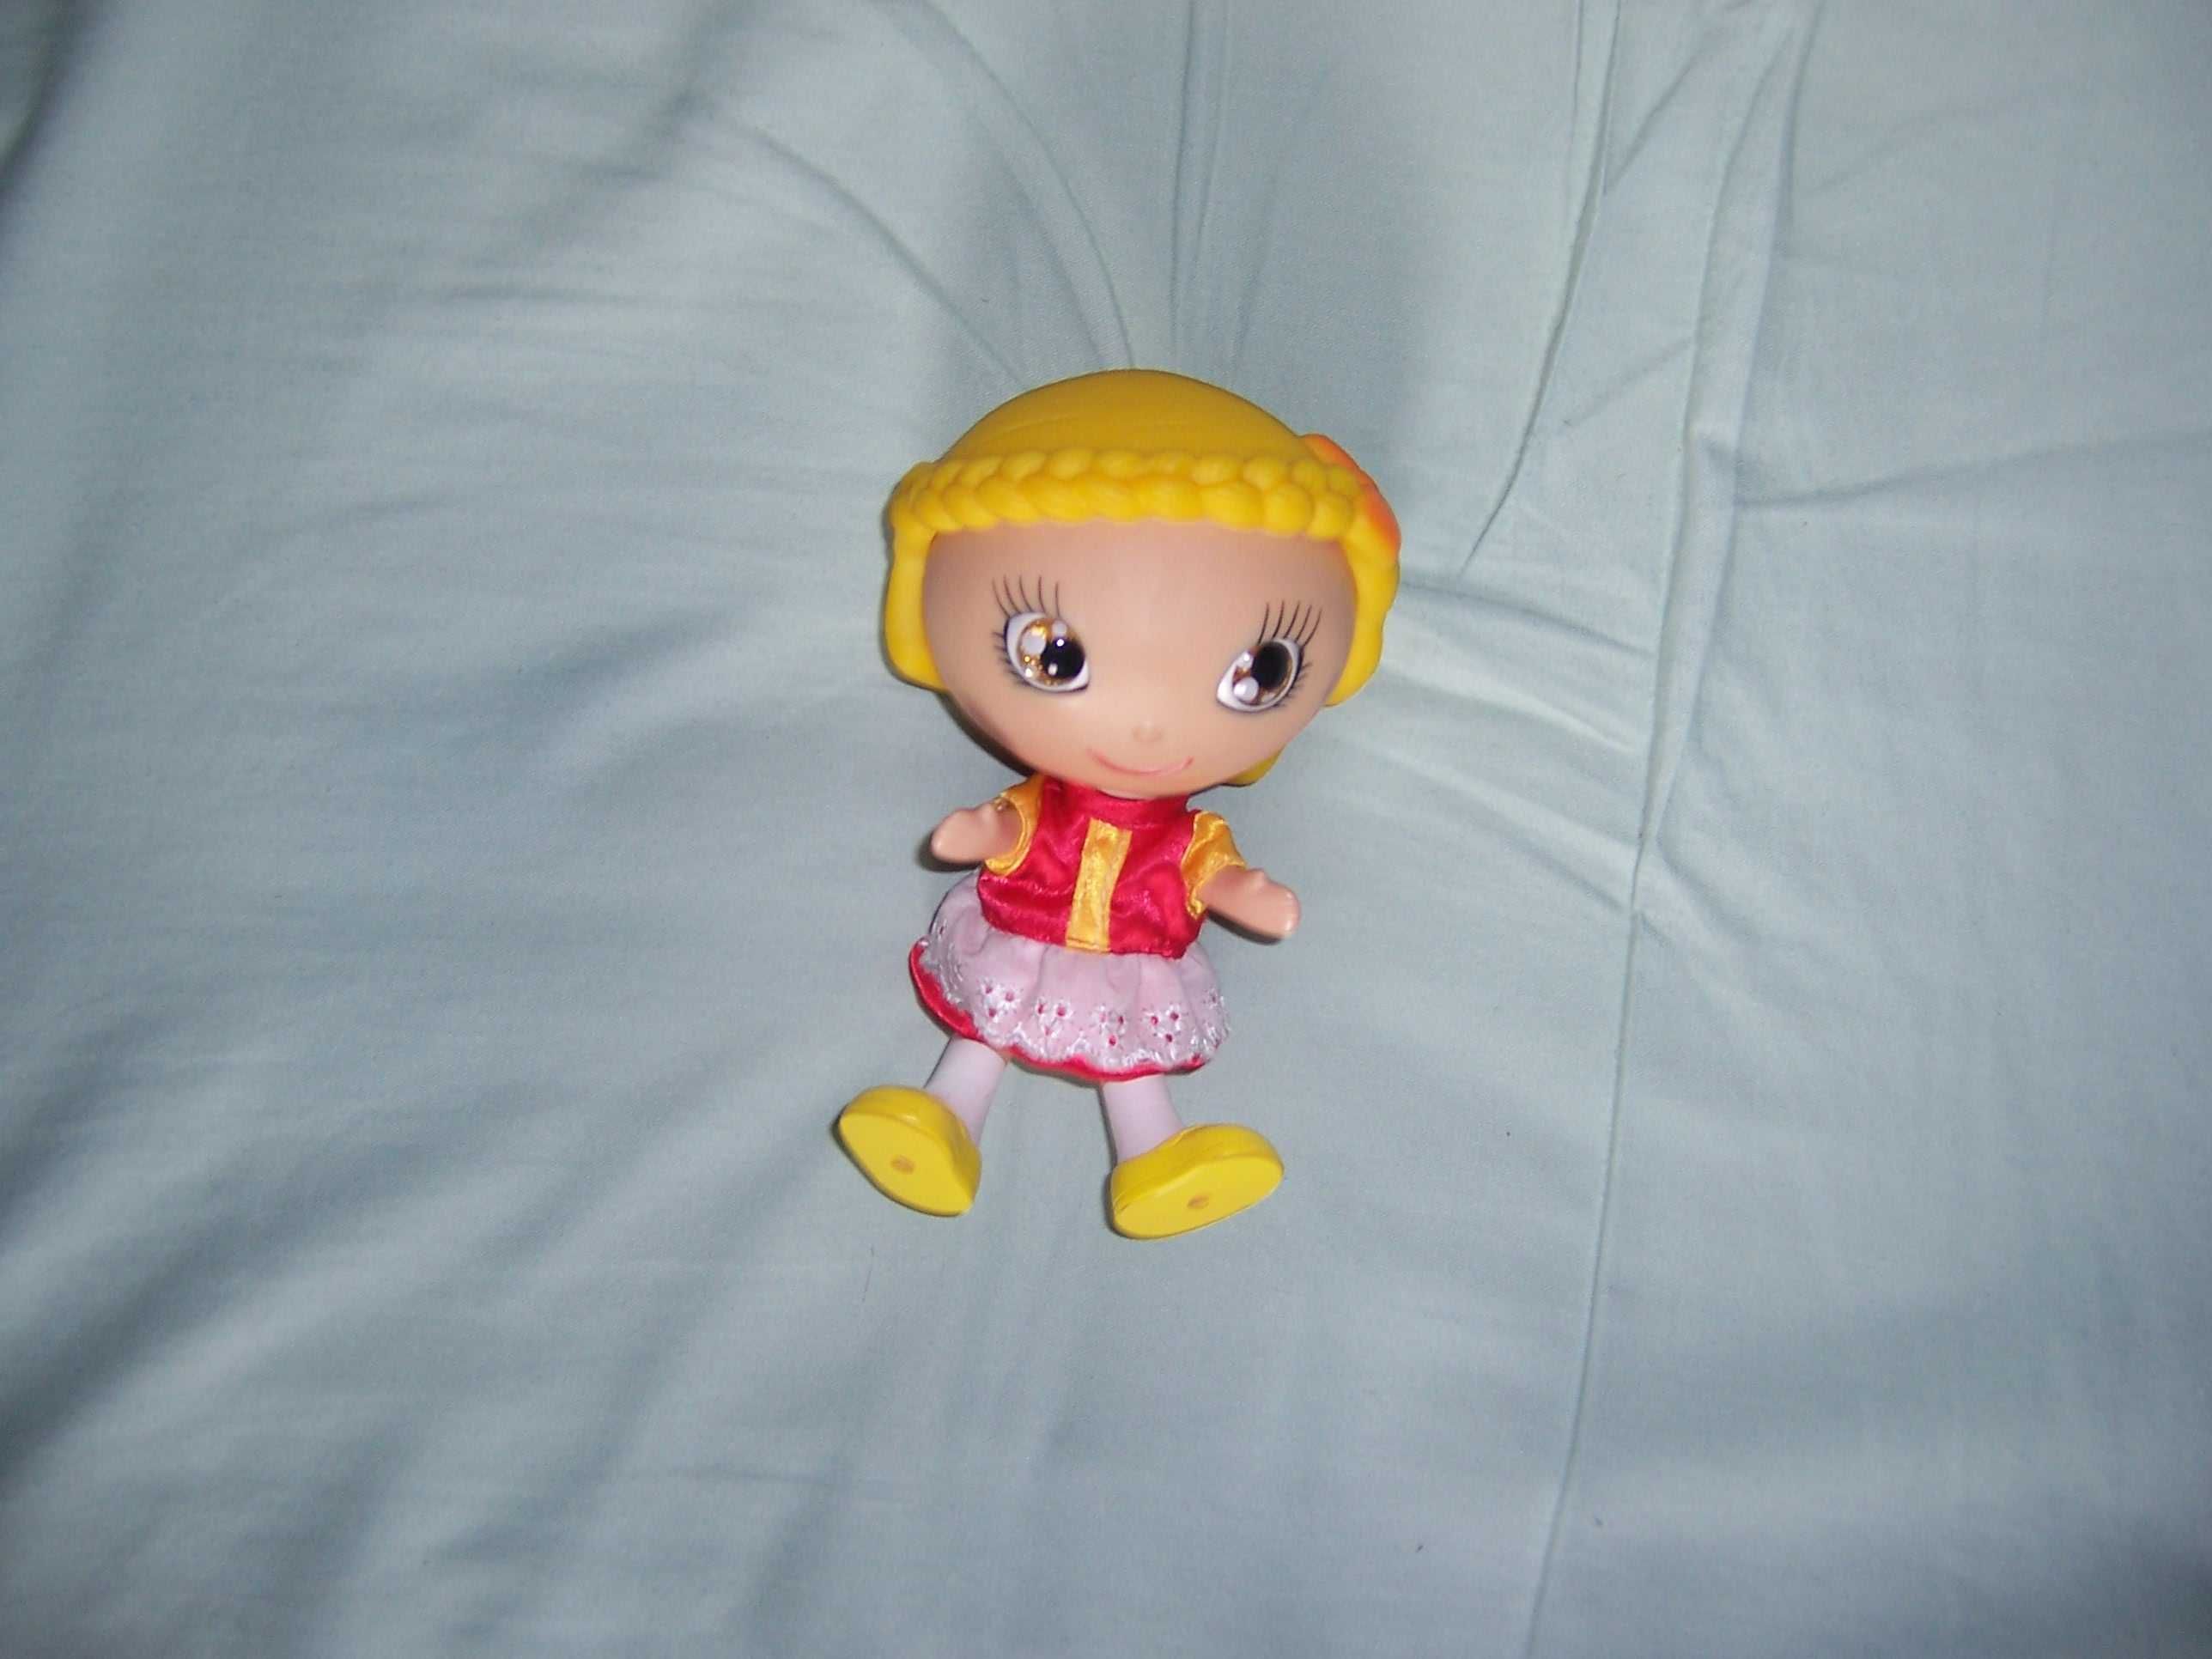 Zabawka lalka z ruchomymi rączkami i nogami